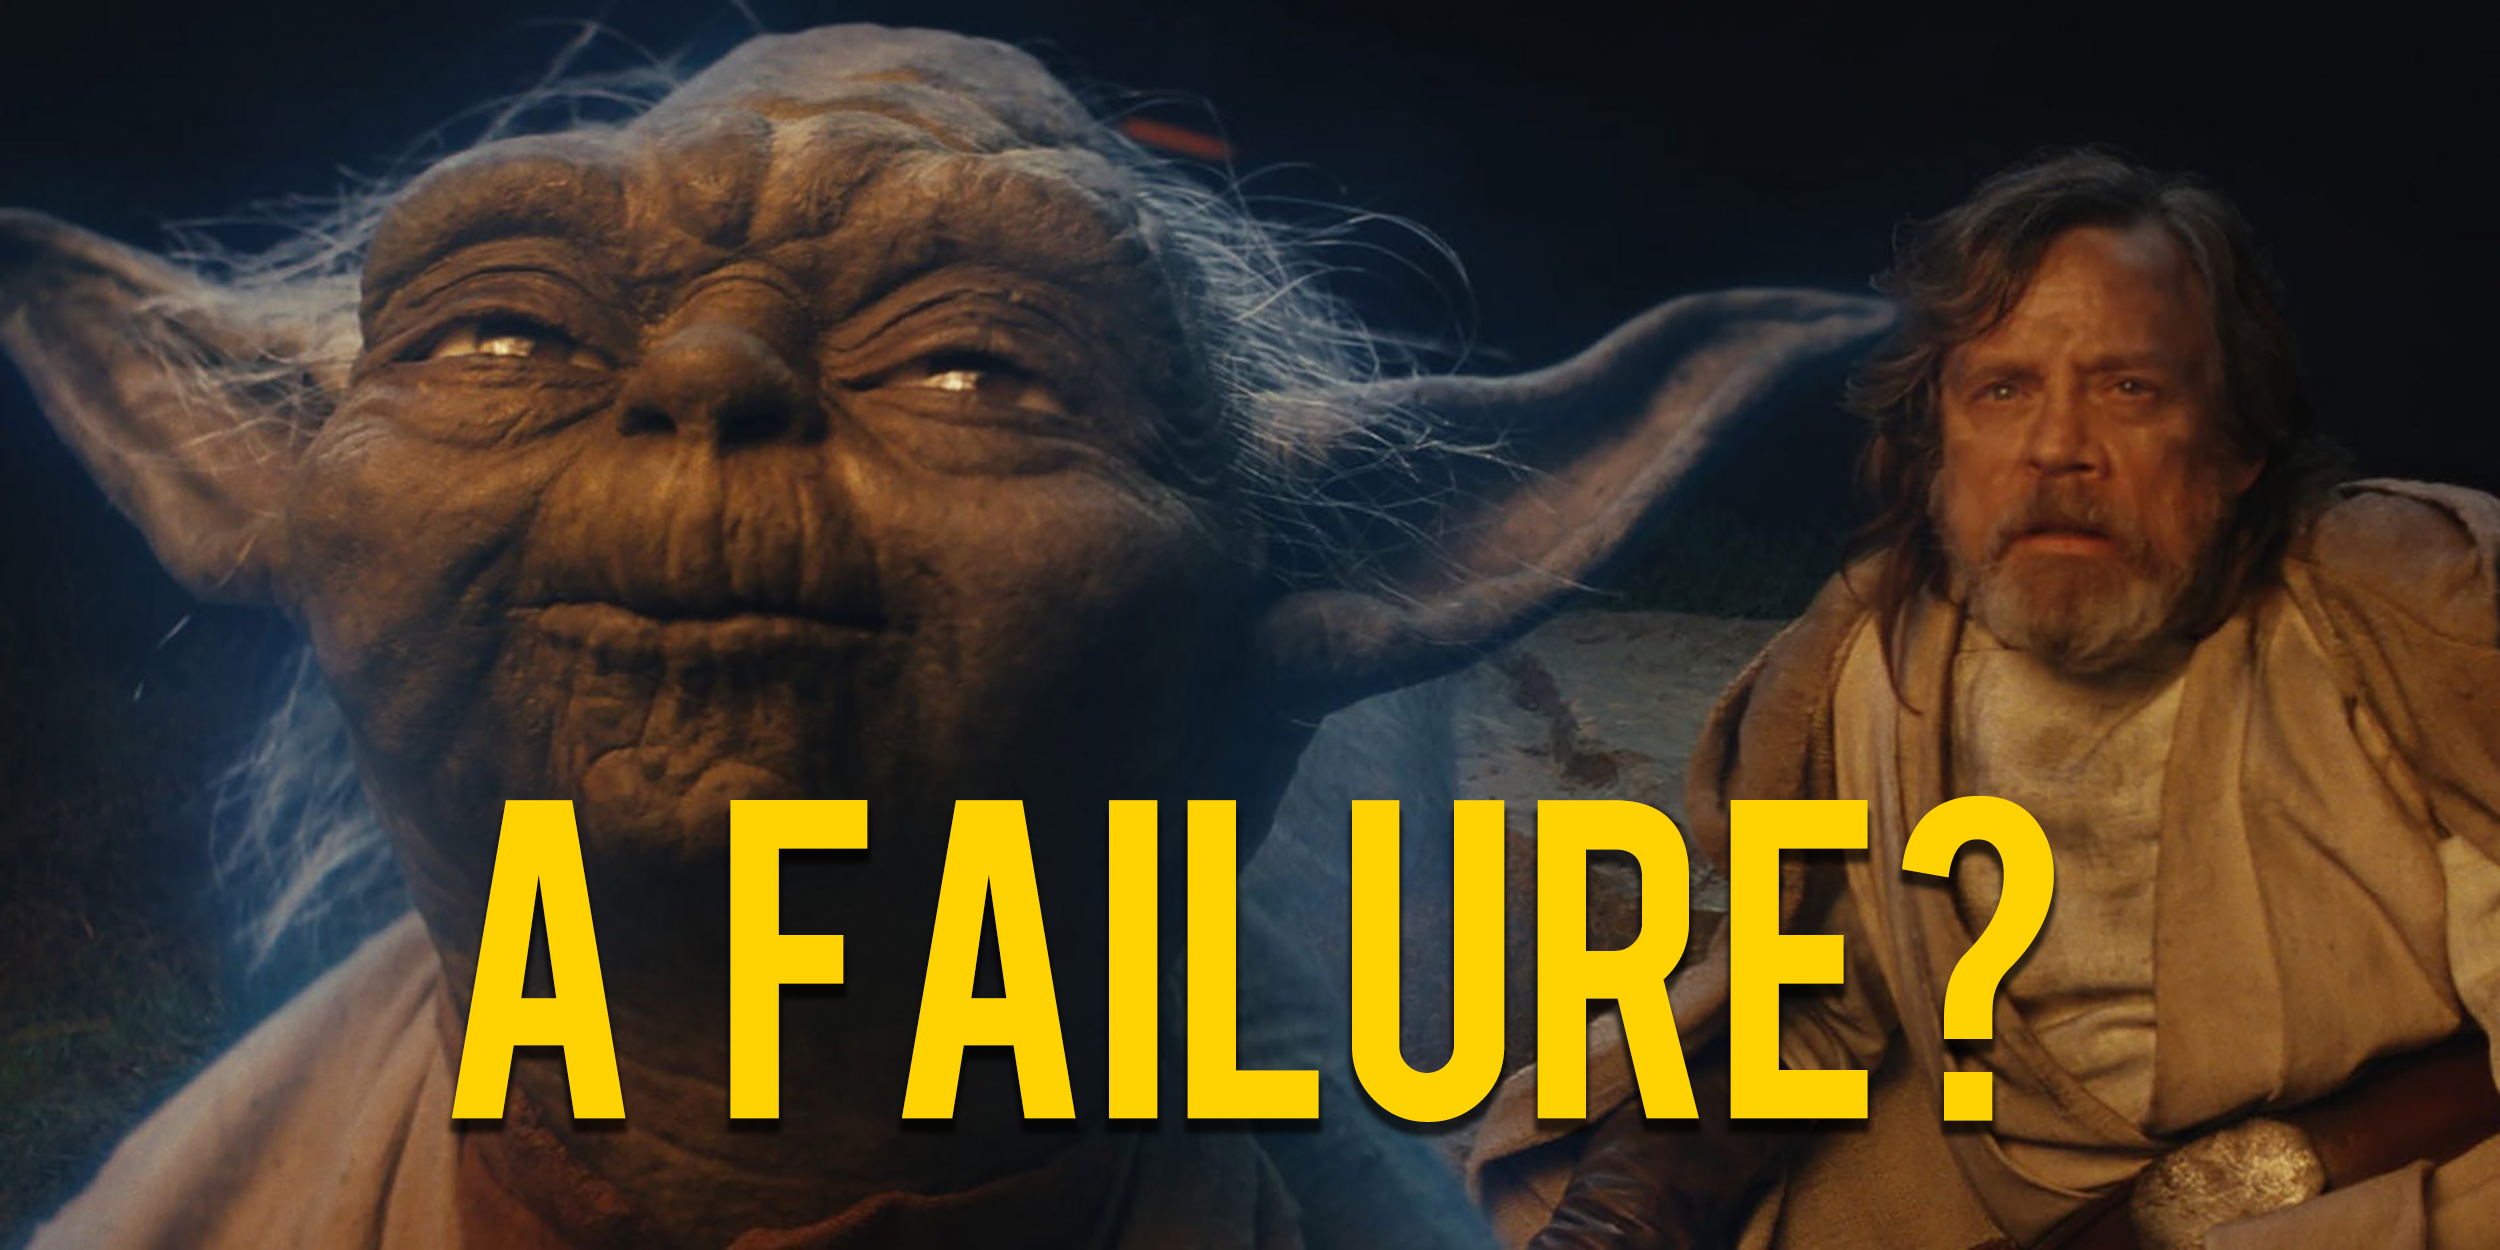 Major Continuity Error Spotted In 'Star Wars: The Last Jedi